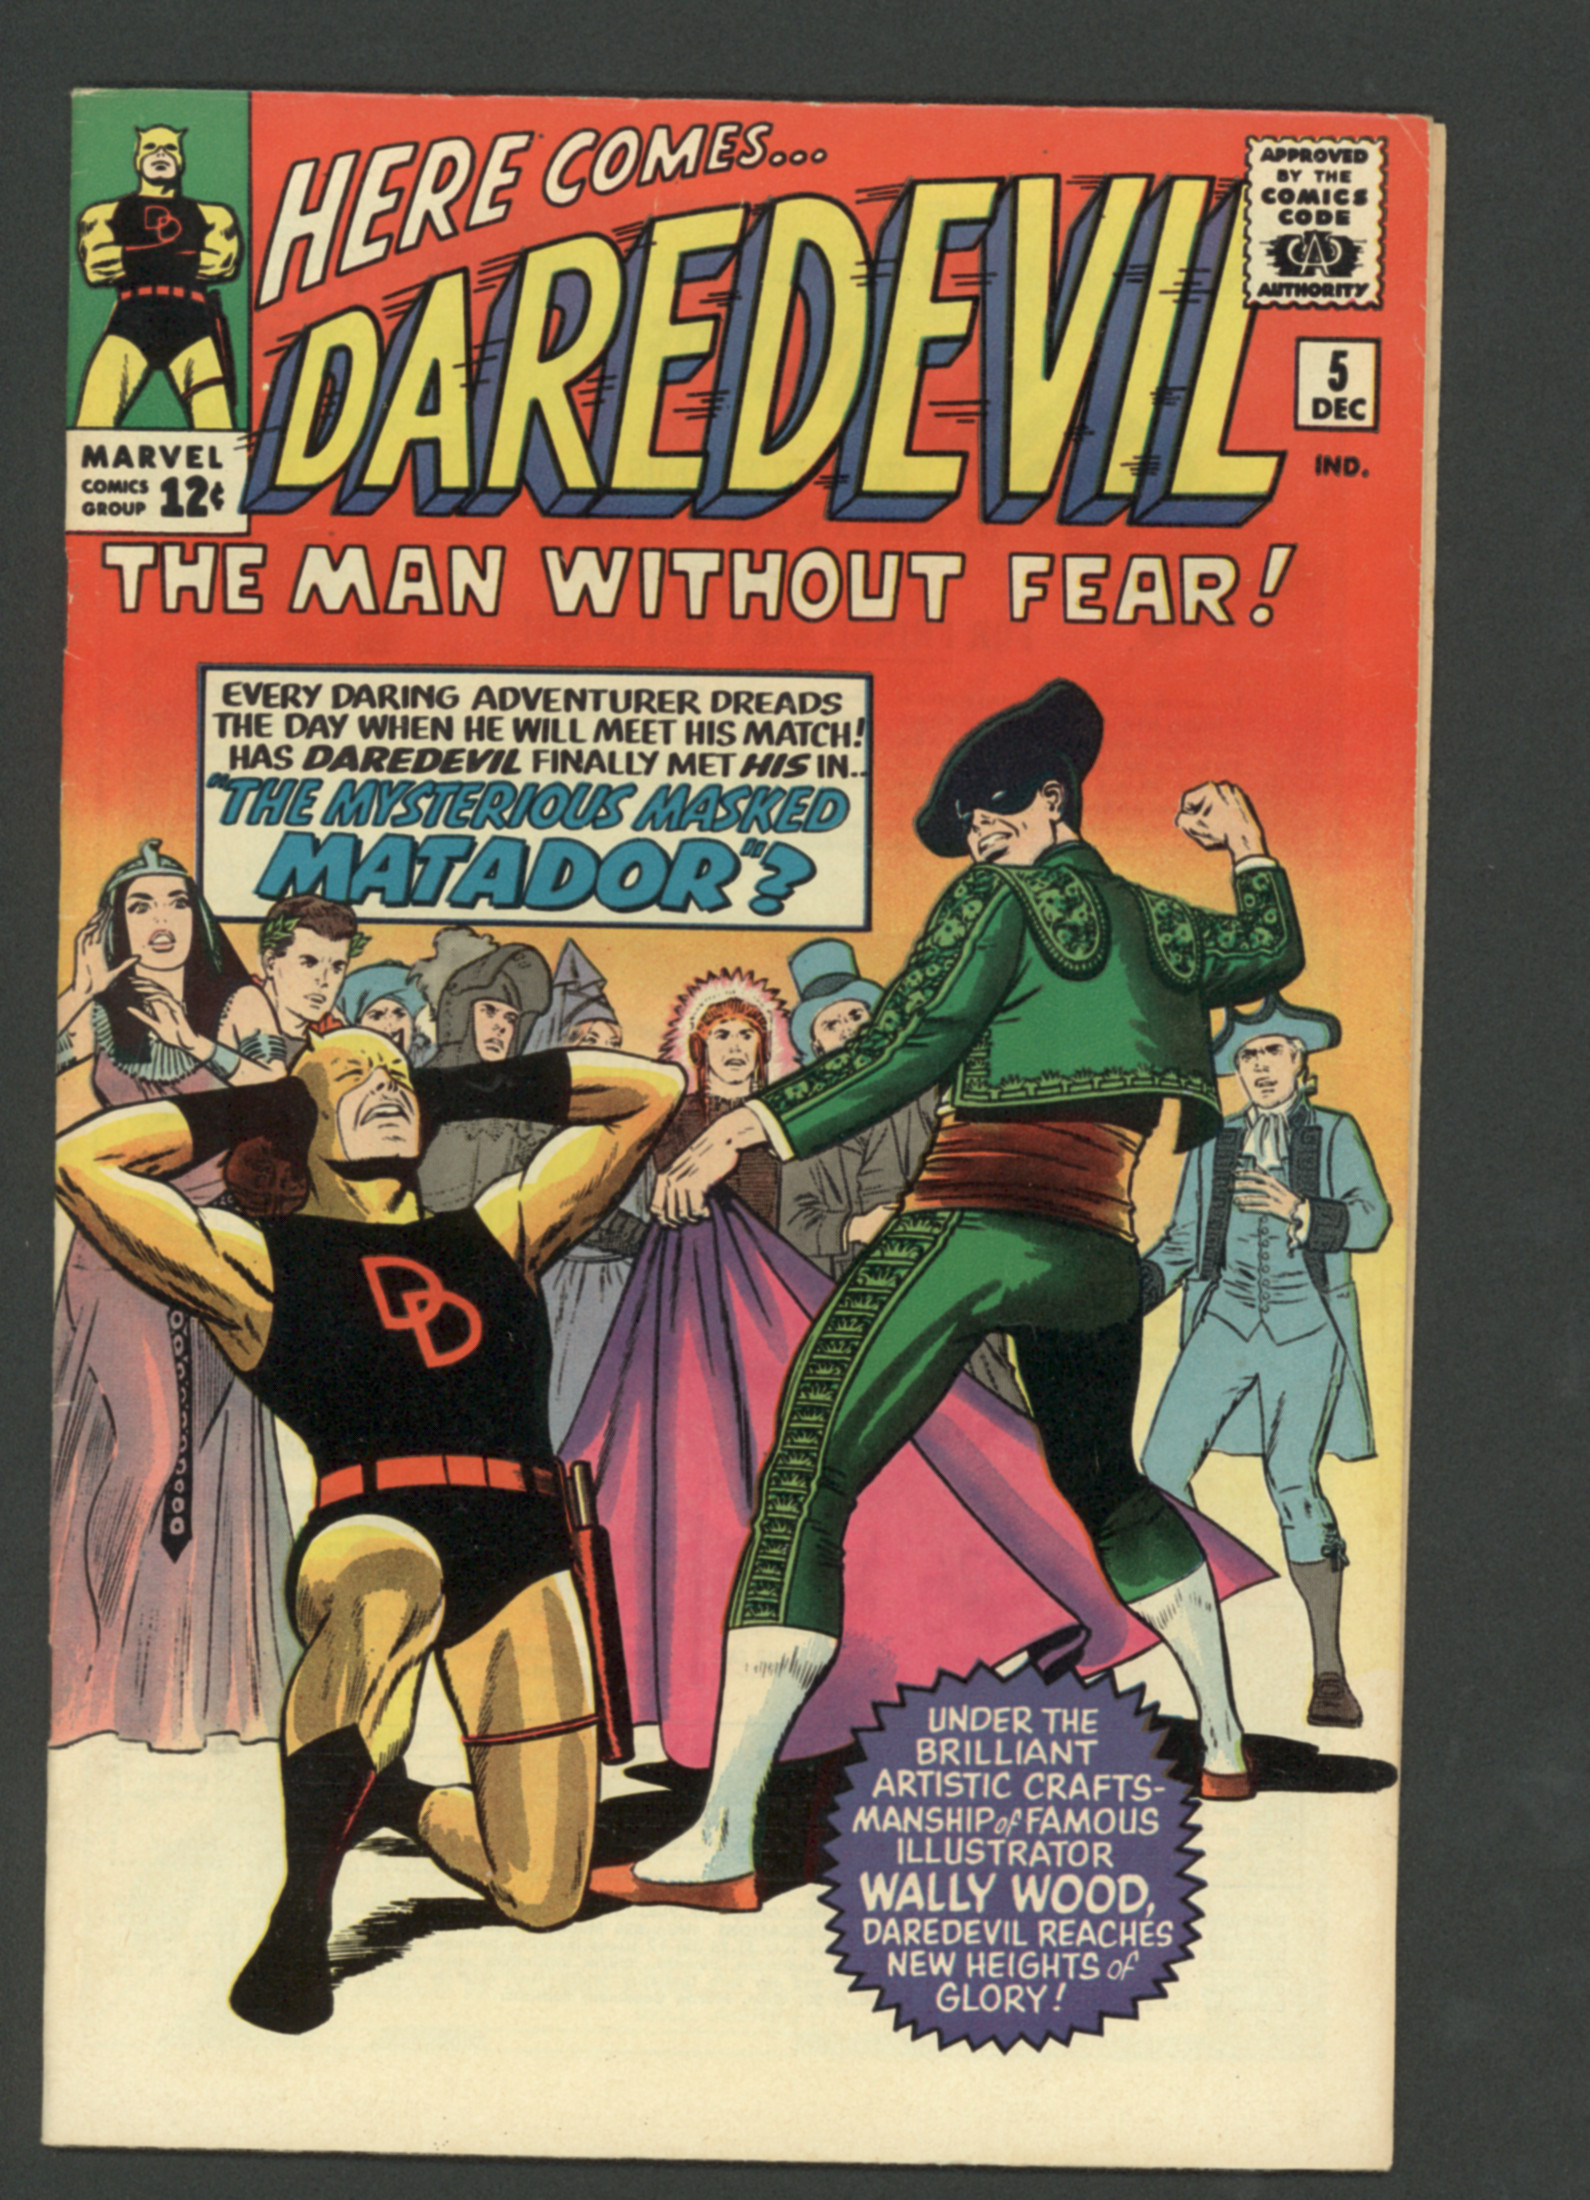 Daredevil #5